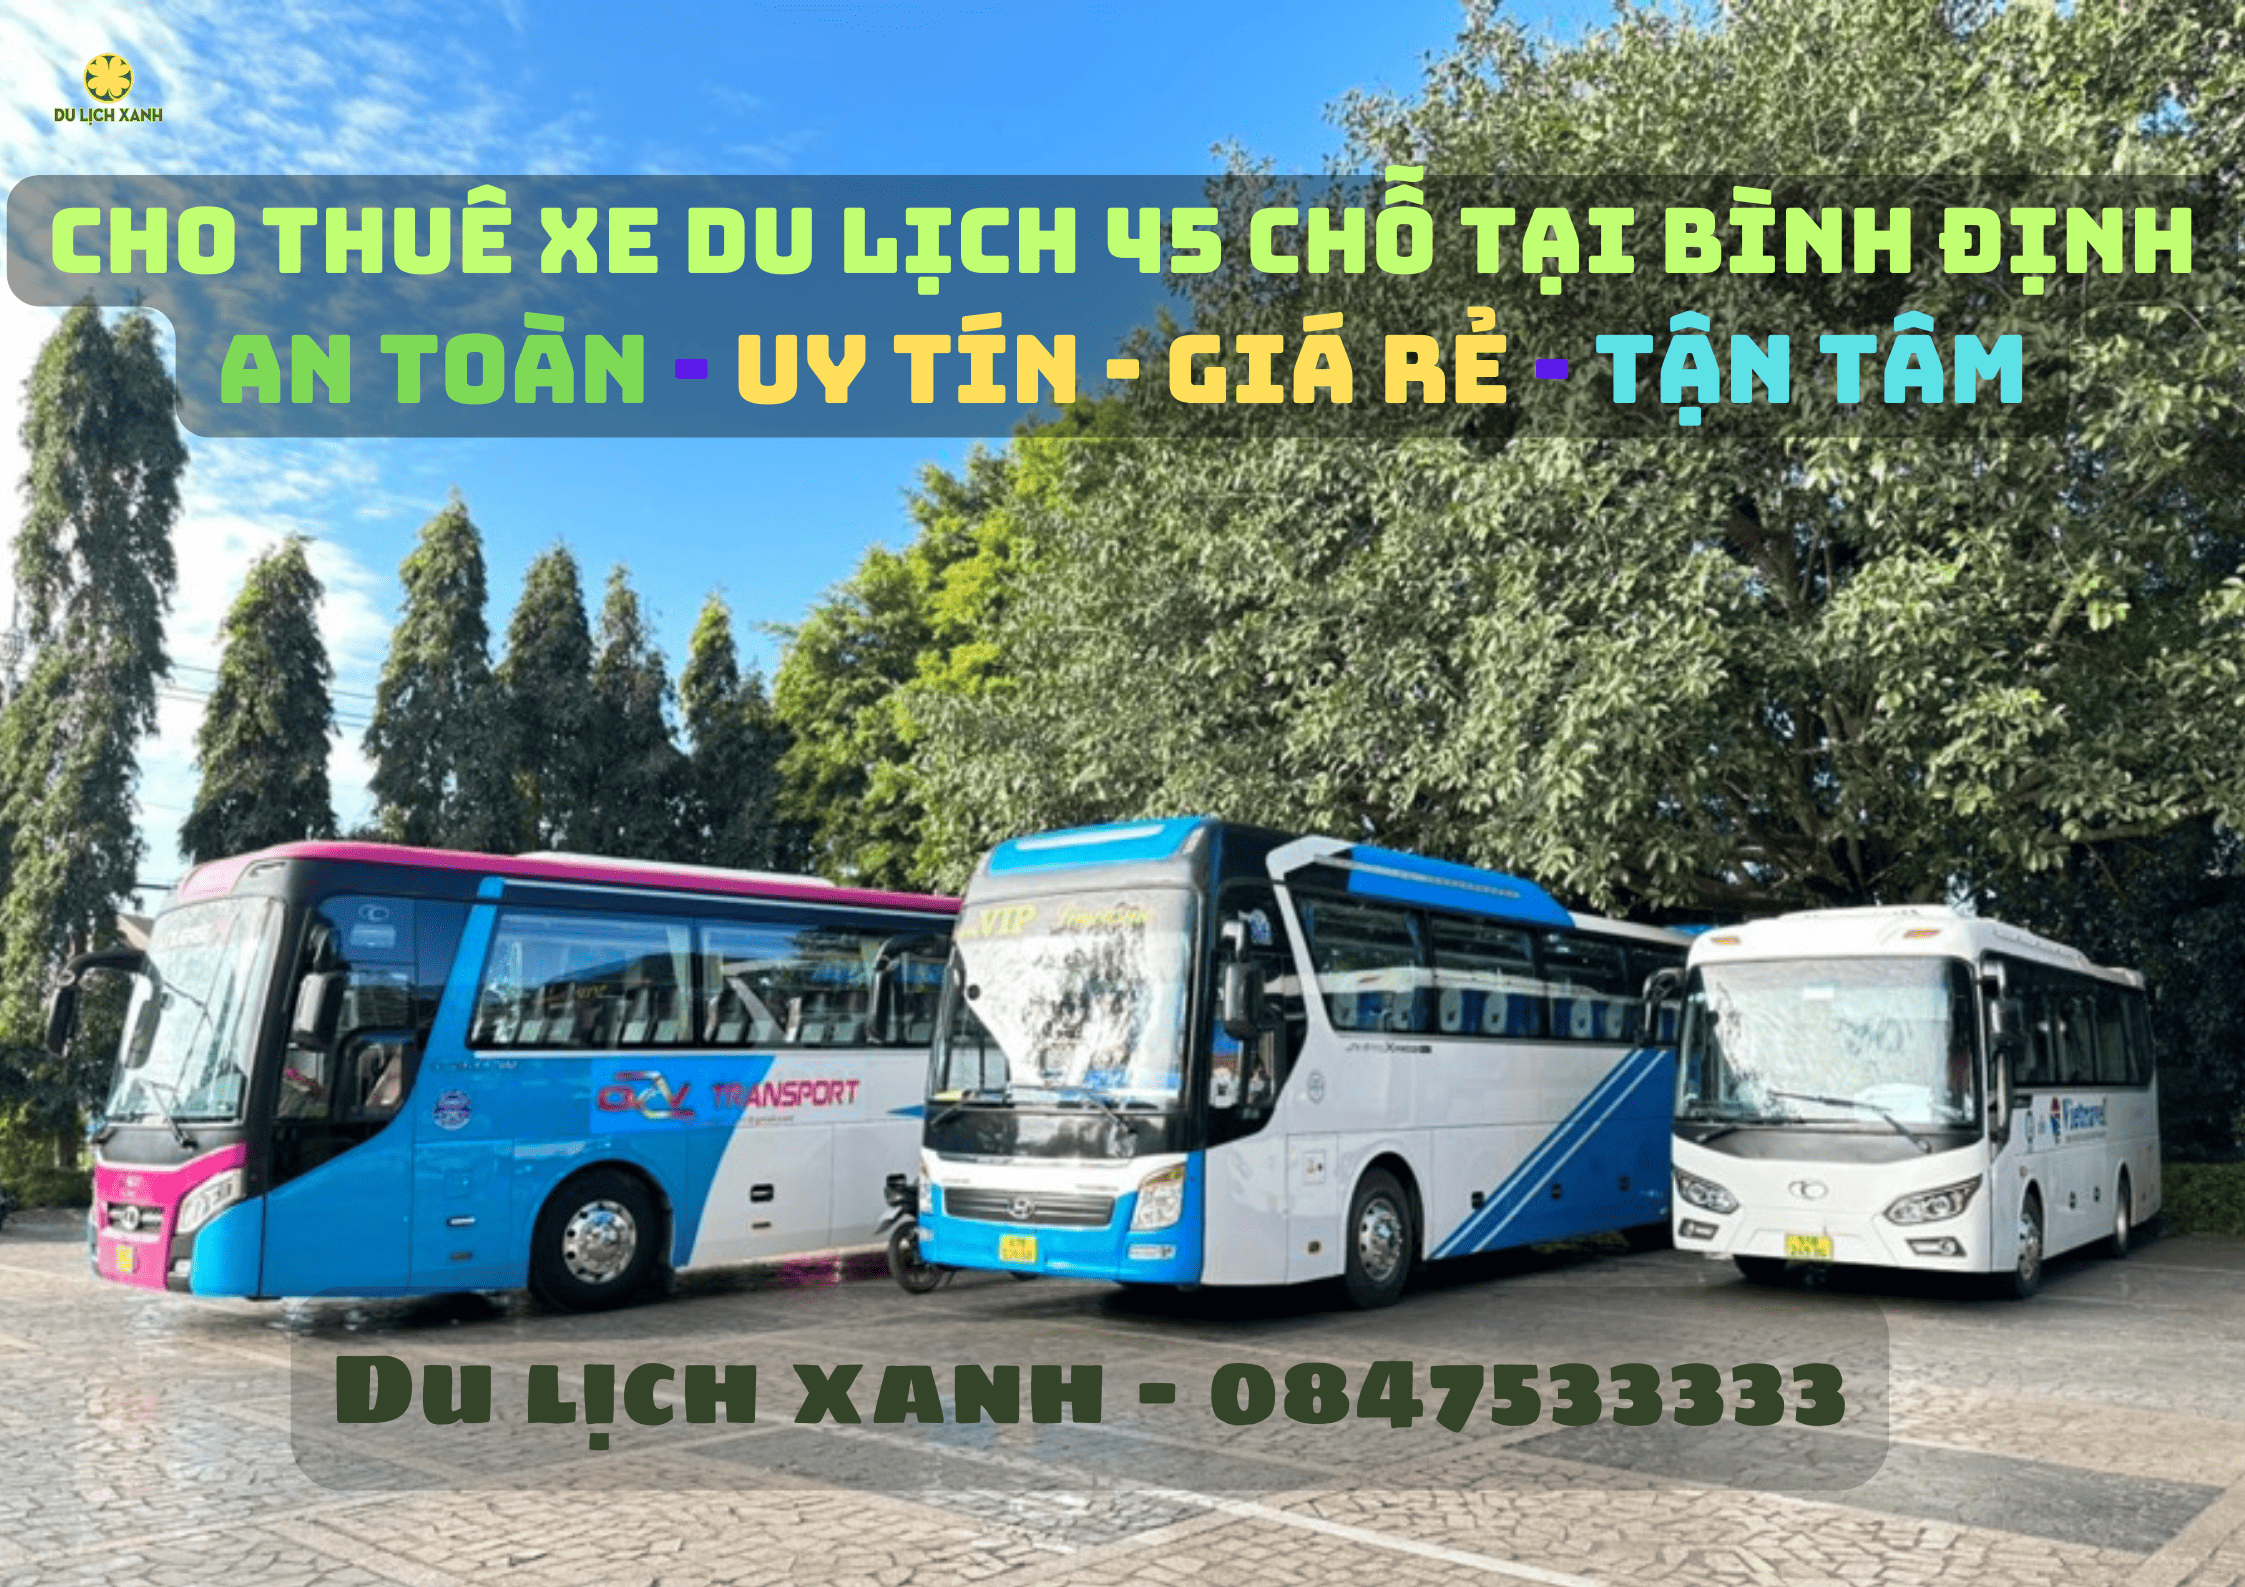 Dịch vụ cho thuê xe du lịch 45 chỗ tại Bình Định